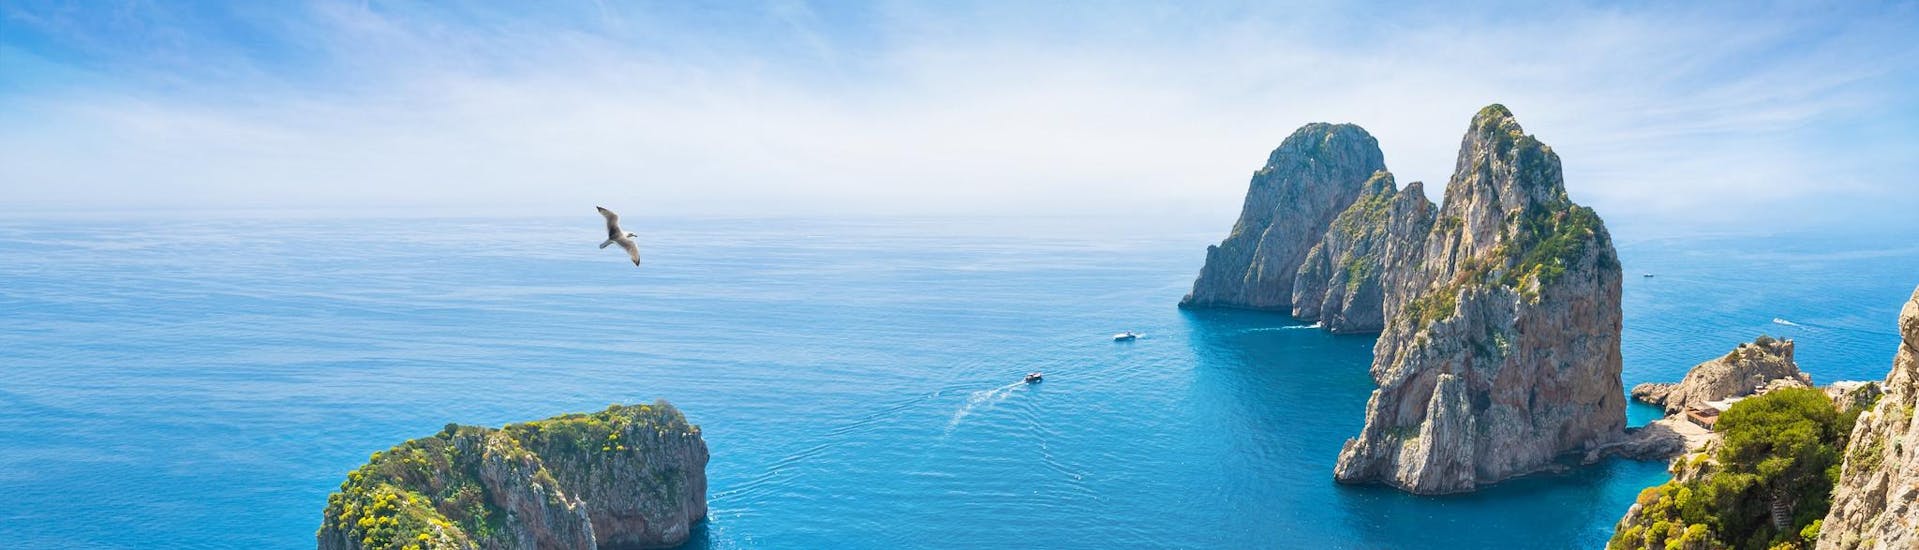 Vue aérienne de bateaux lors d'une balade en bateau à Capri.